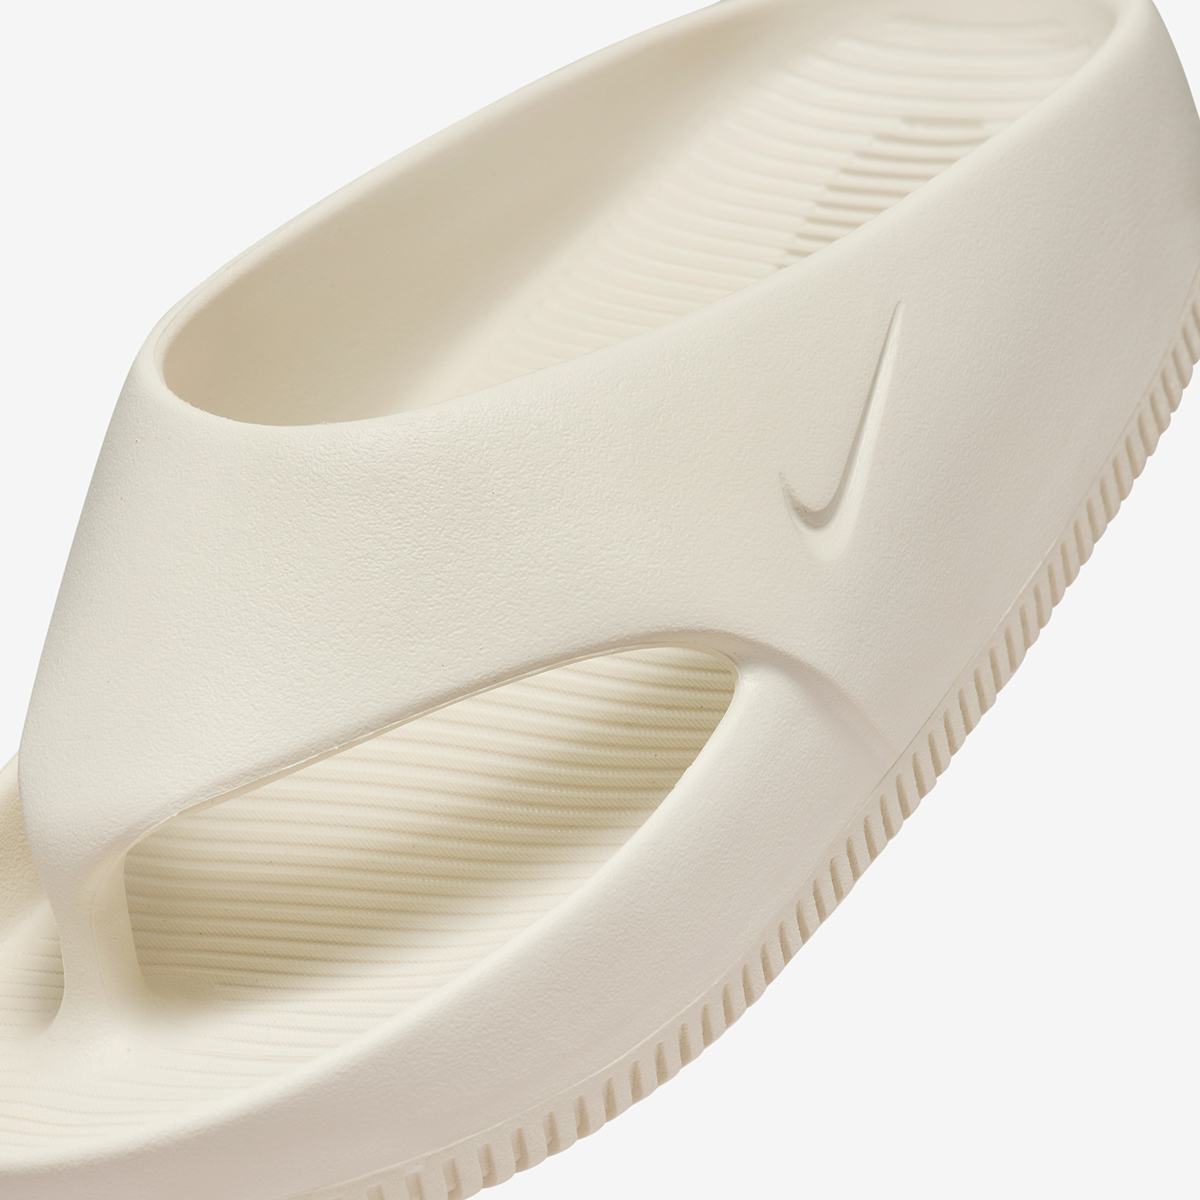 Nike Air Max 90 Triple All White Sz 11.5 Mens Sneaker Shoe Sail Fd4115 003 1